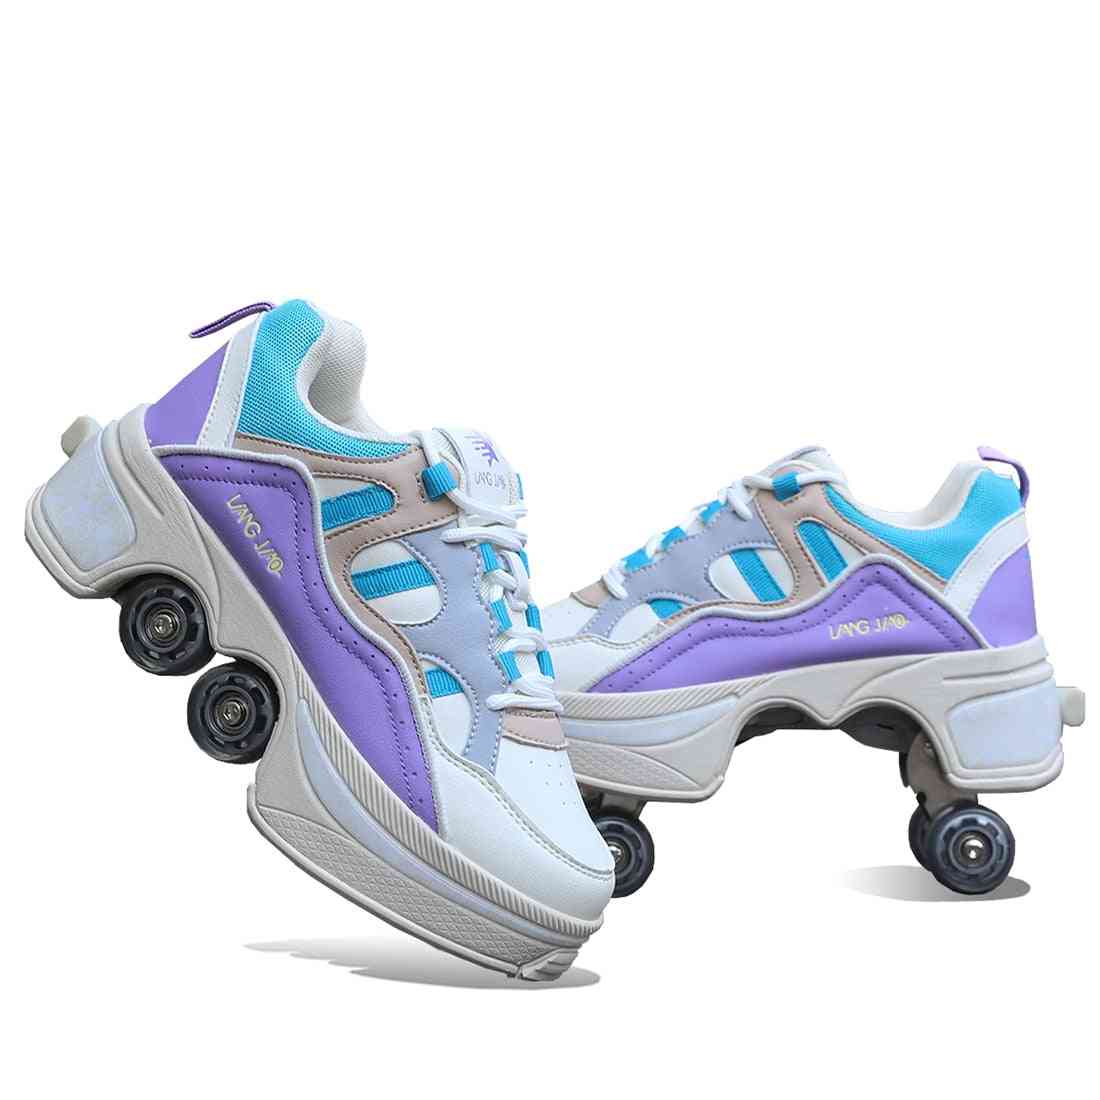 Deform Wheel Skates Roller Skate Shoes